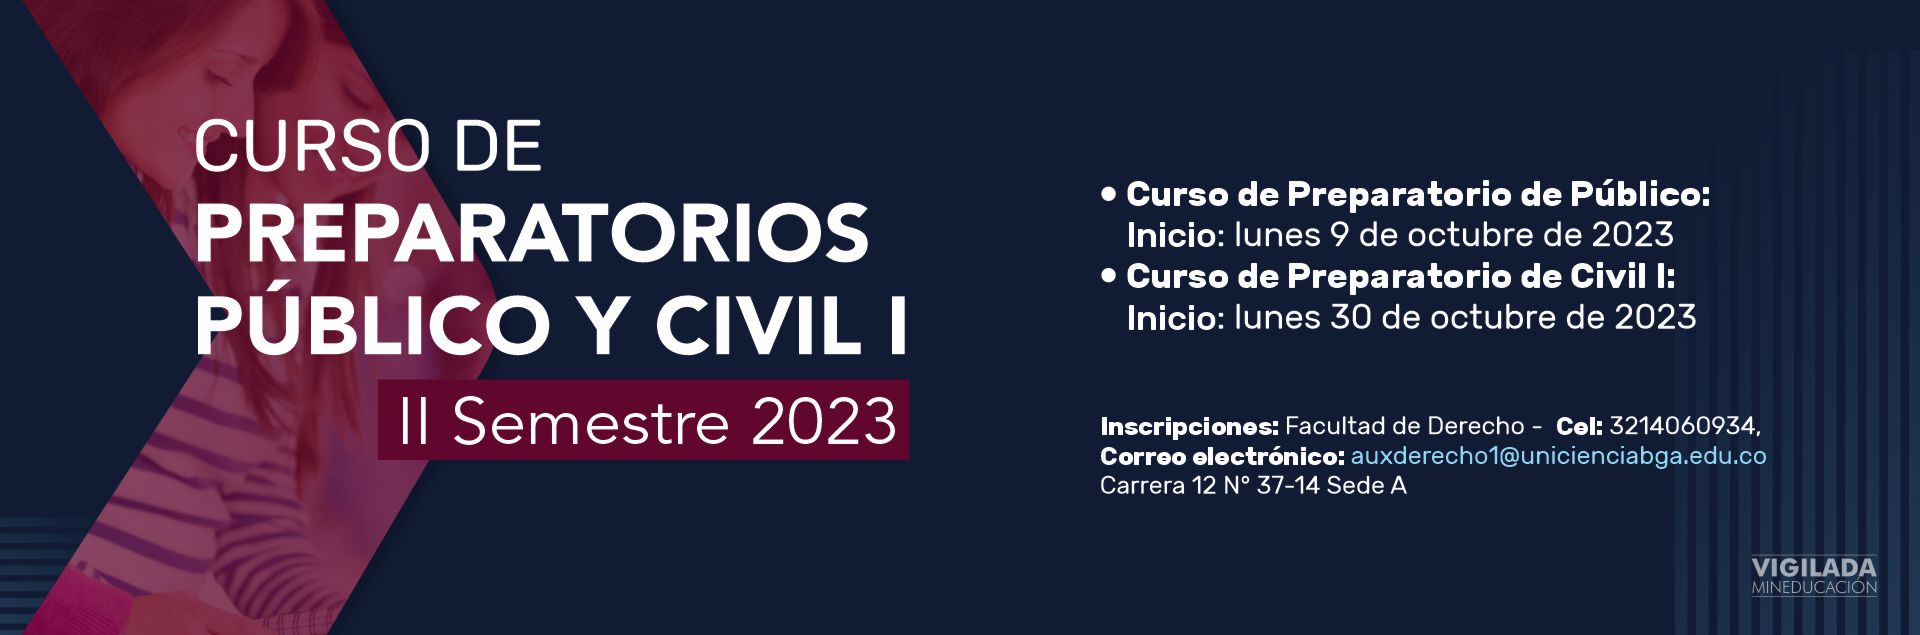 Cursos preparatorios de Público y Civil I - Octubre 2023